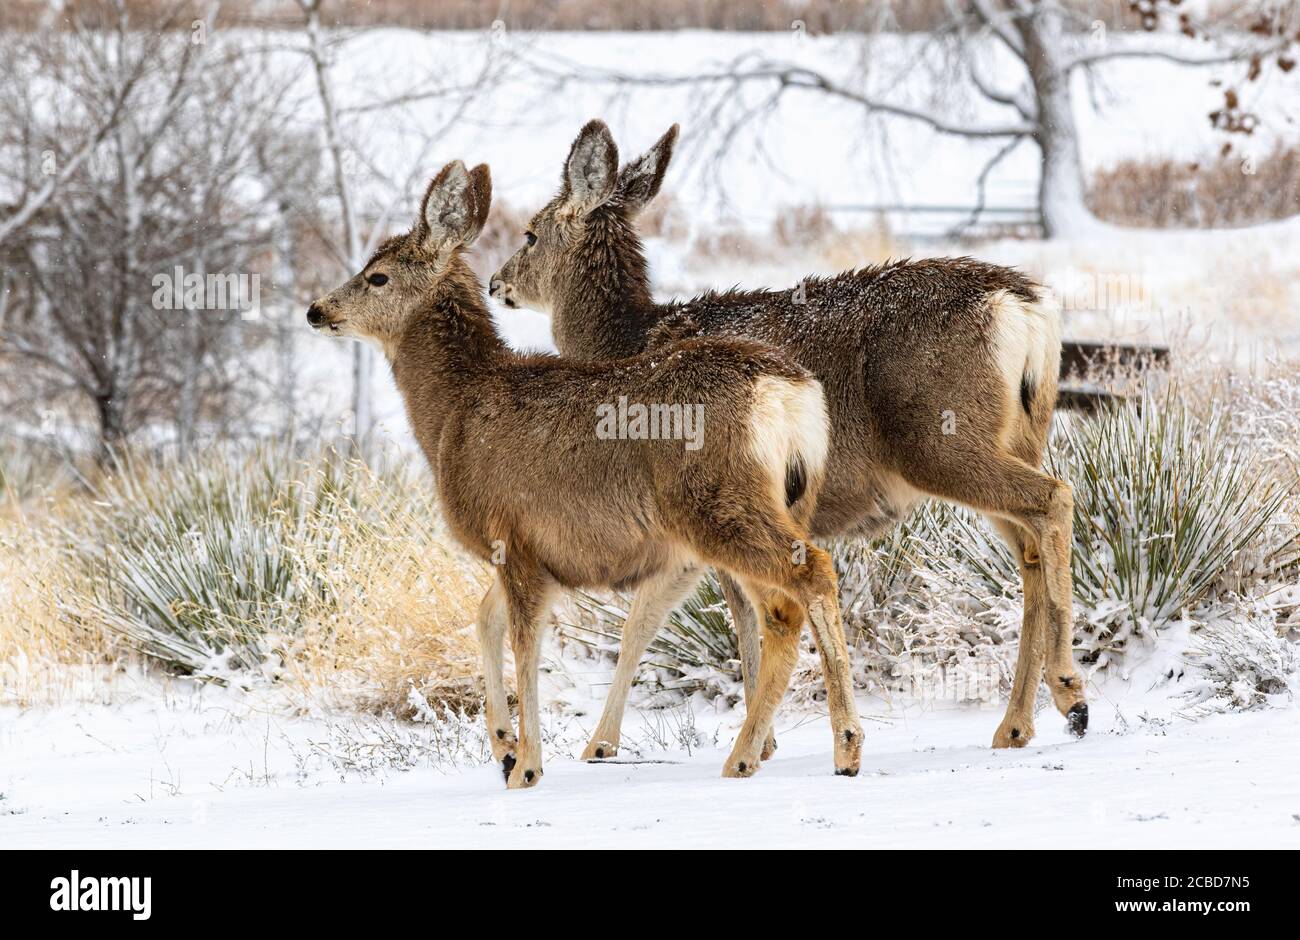 Deux Mule Deer descendent une colline en hiver, après que de la neige fraîchement tombée a blanchi la région. Banque D'Images